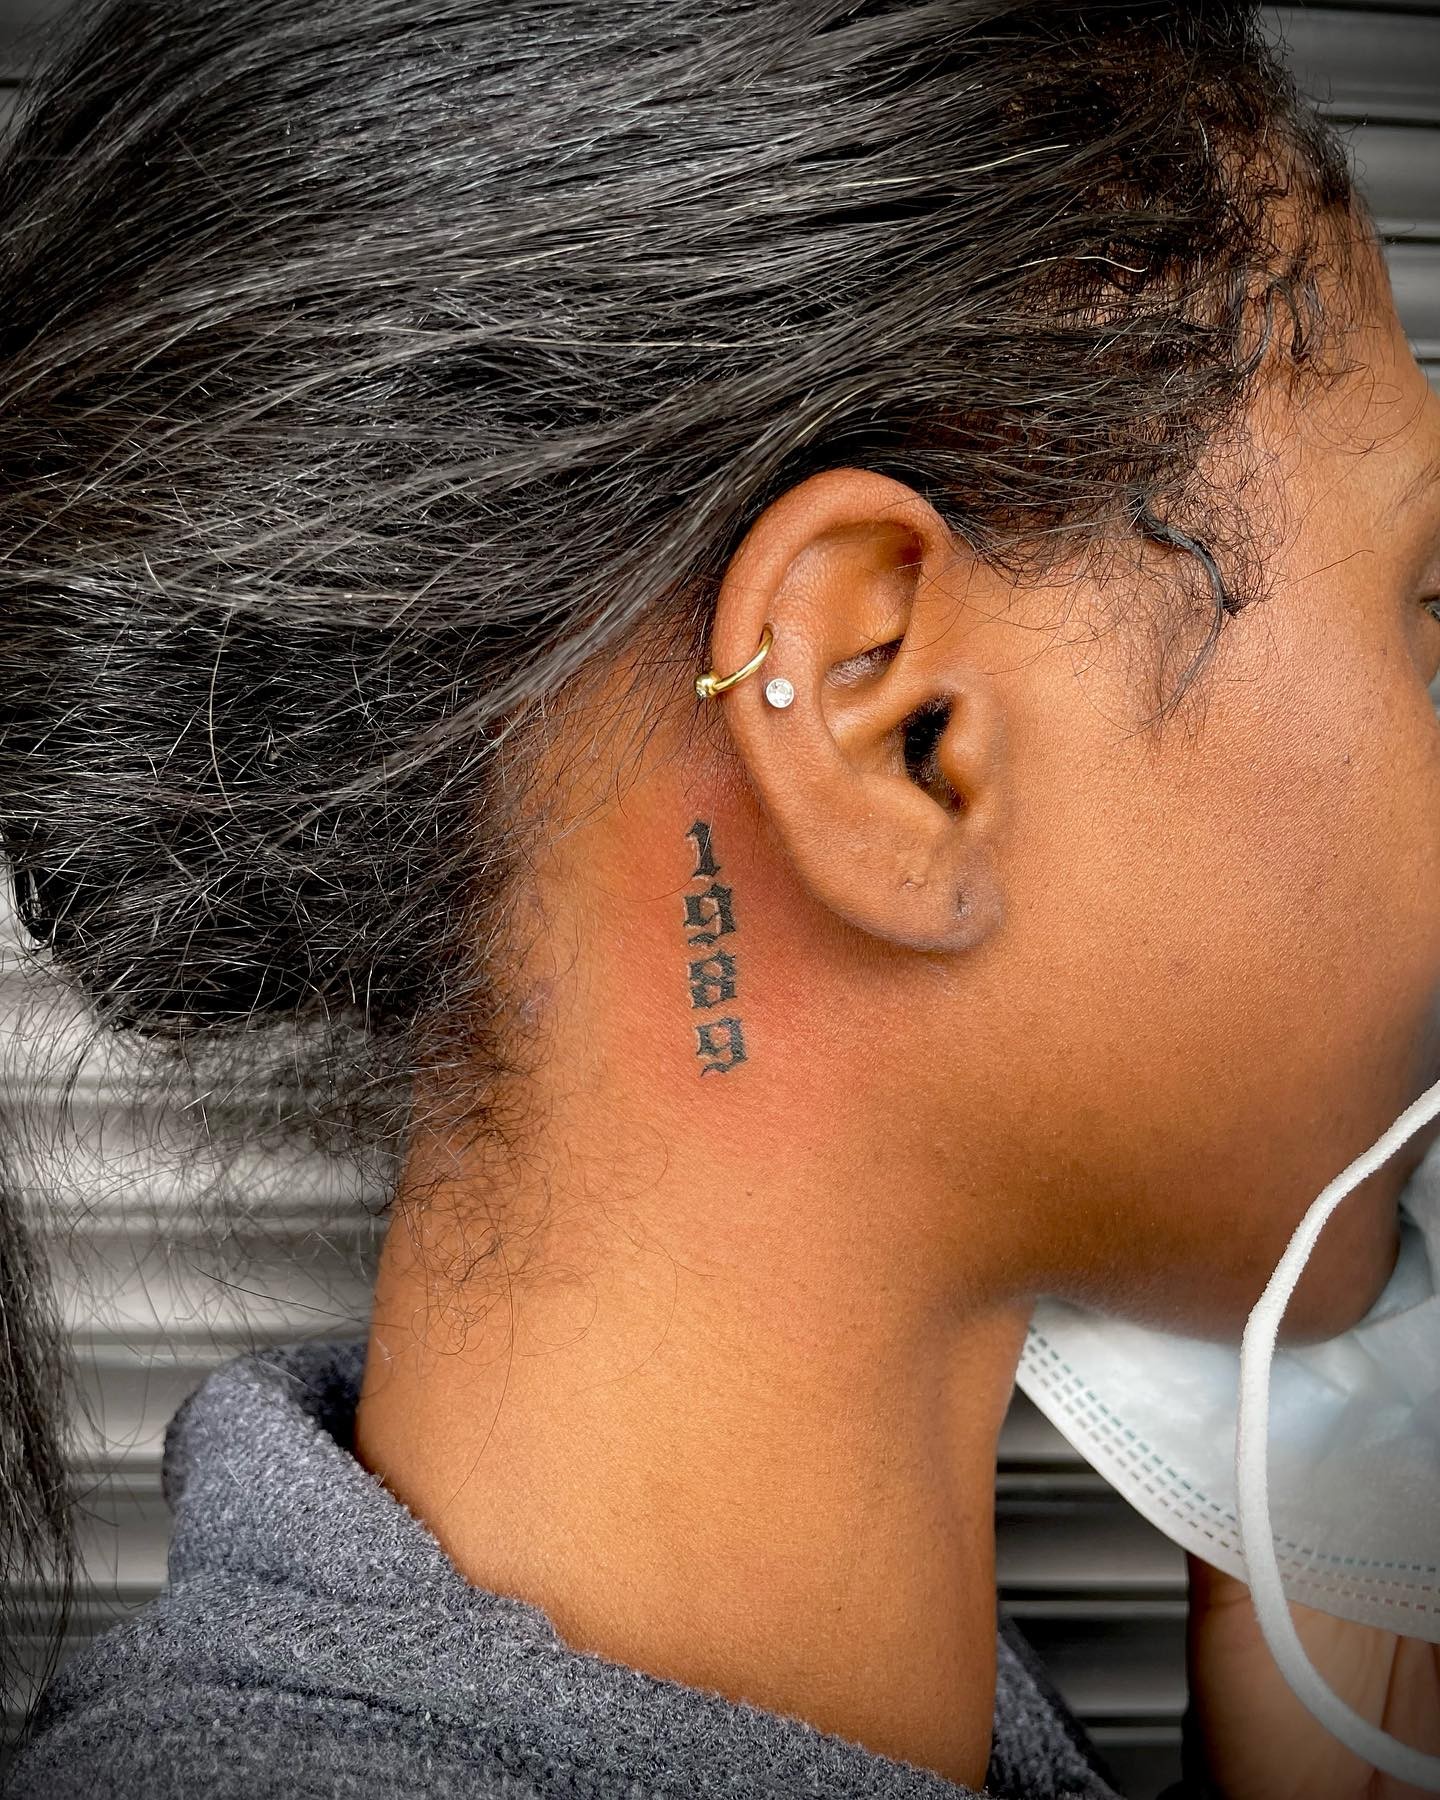 Números detrás del tatuaje de la oreja.